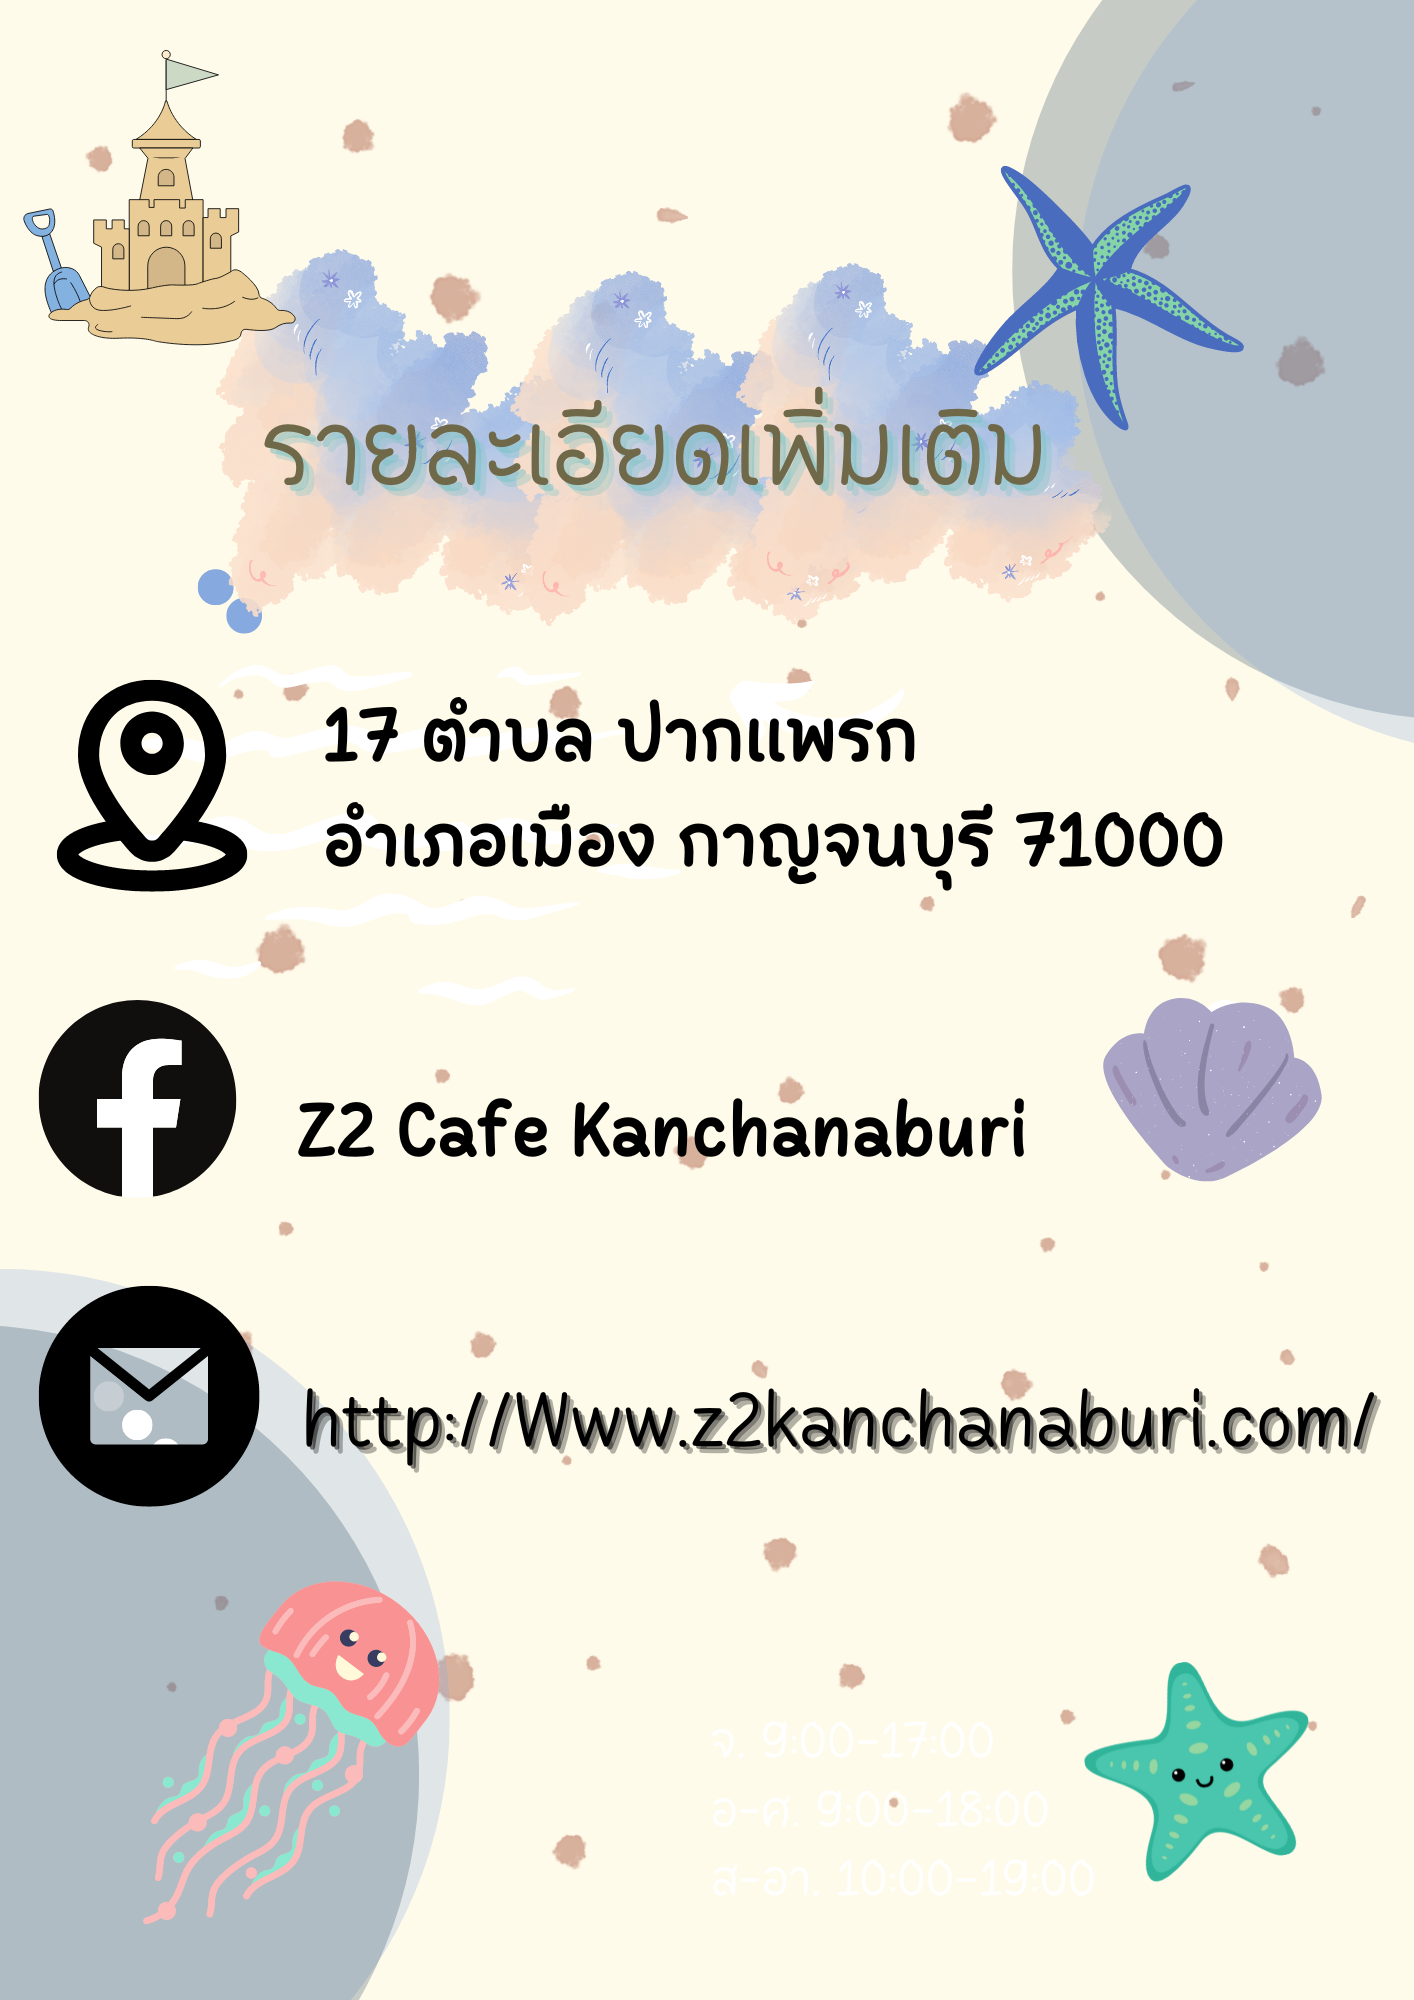 Z2 Cafe Kanchanaburi